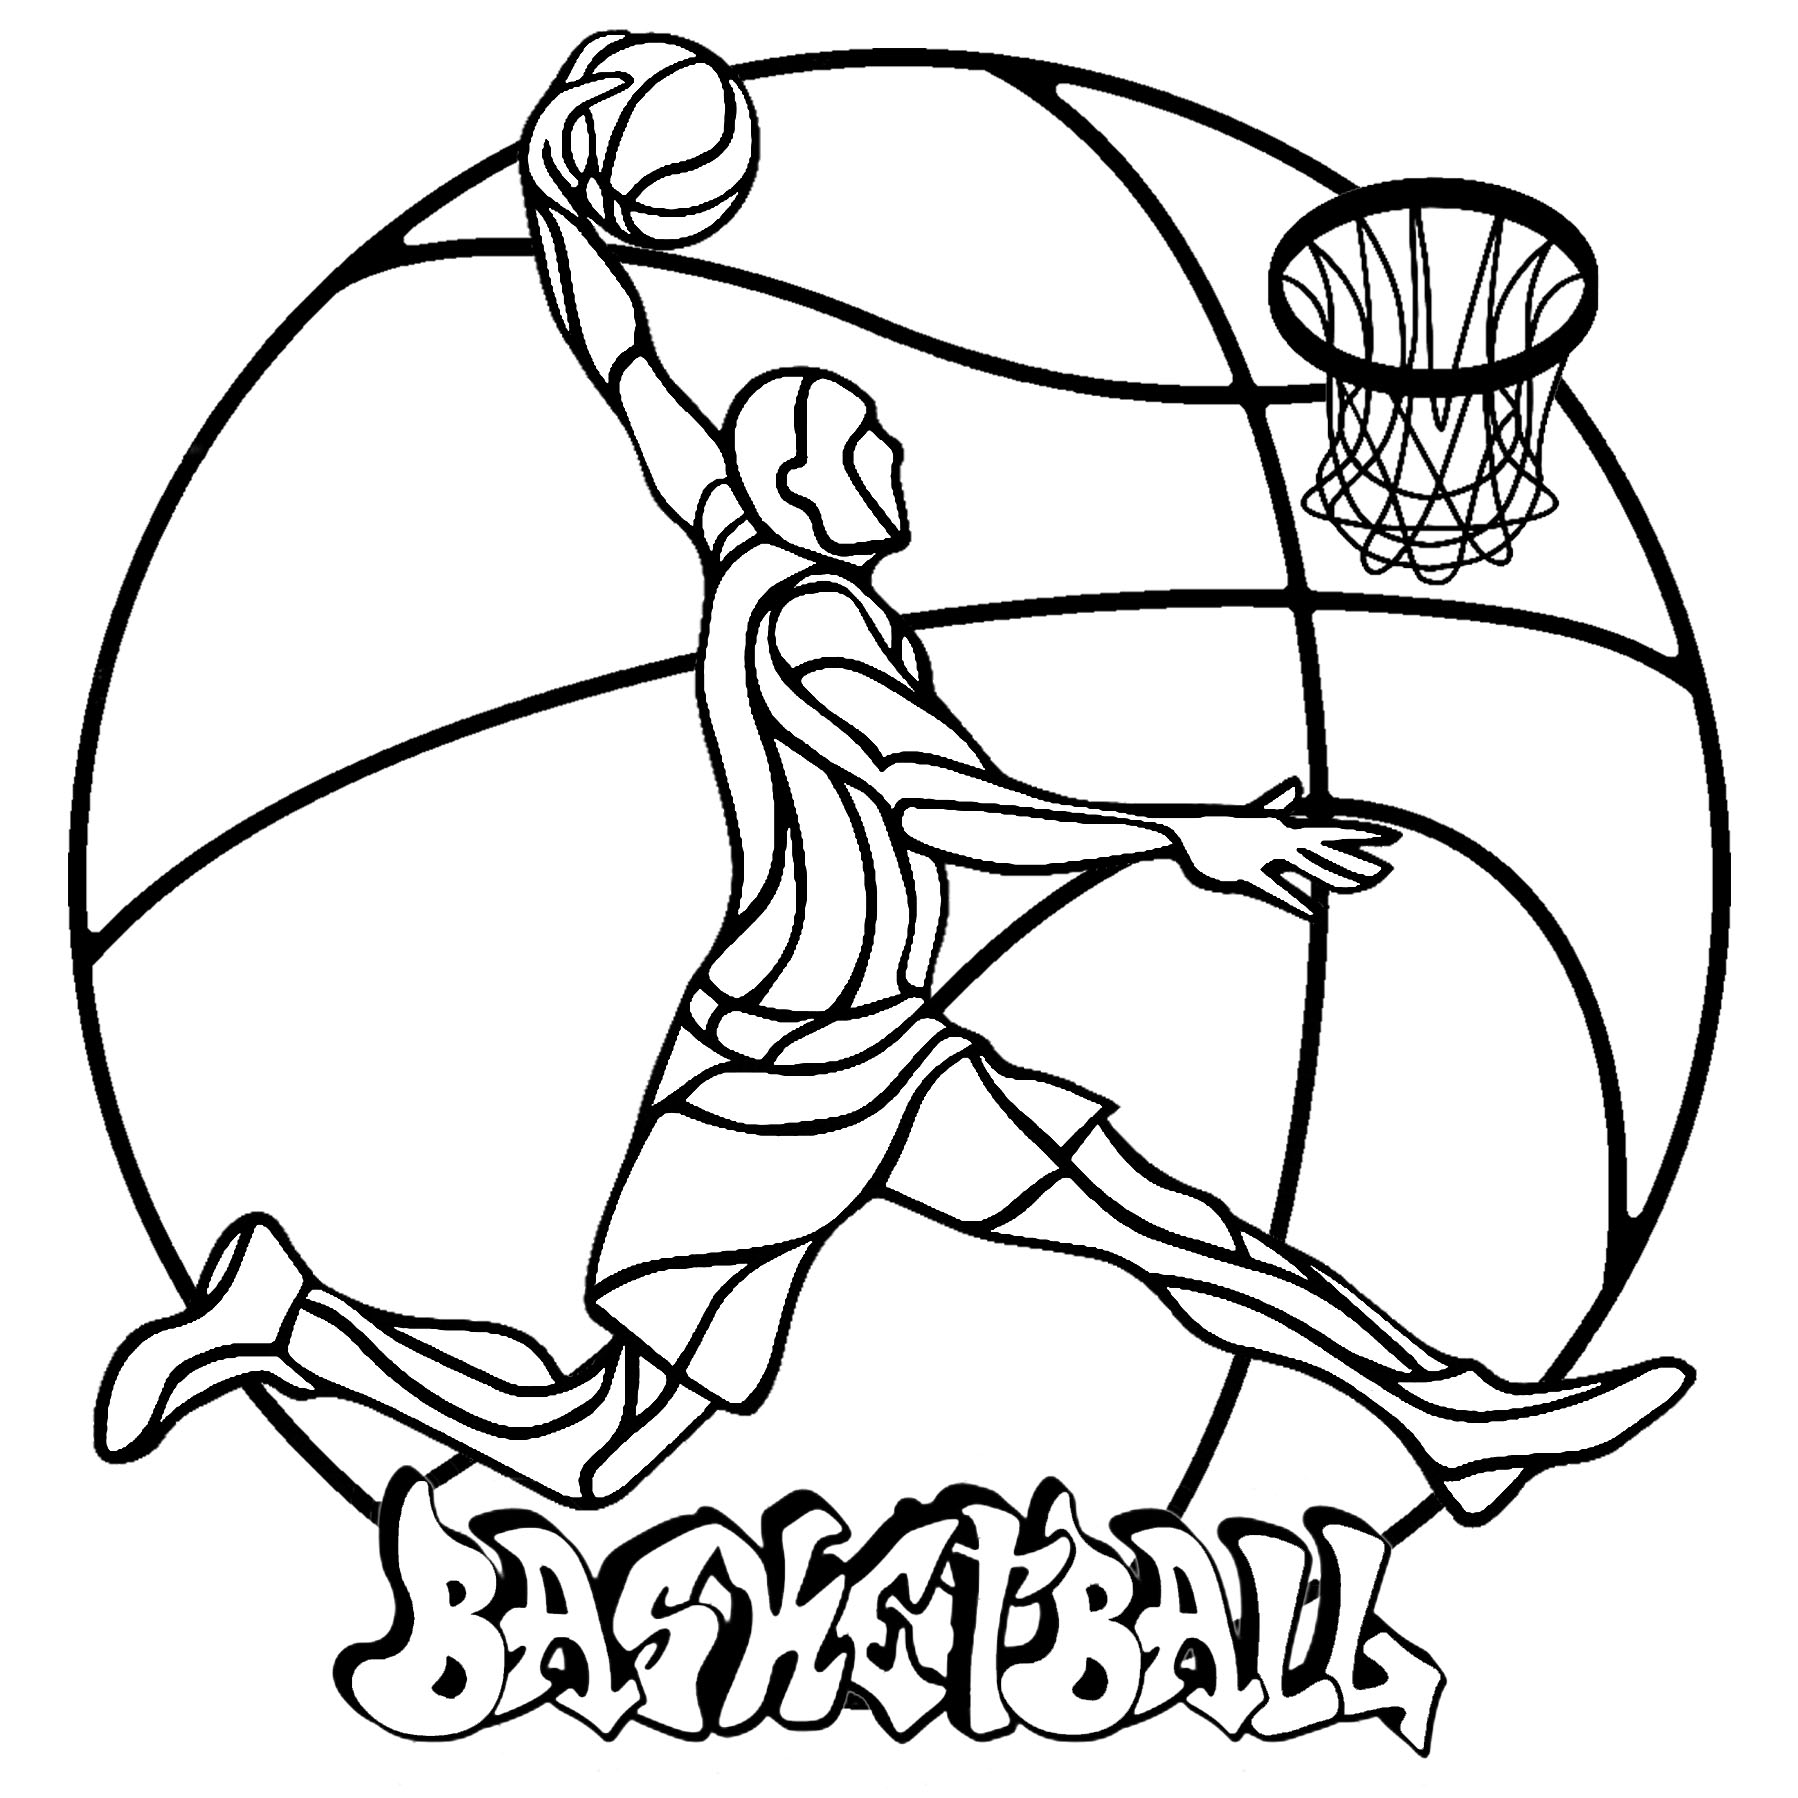 Un sencillo mandala sobre el tema de uno de los deportes más populares: el baloncesto.  Colorea a este jugador de baloncesto, su balón, la canasta, la etiqueta 'Baloncesto' y el gran balón del fondo, Artista : Art'Isabelle